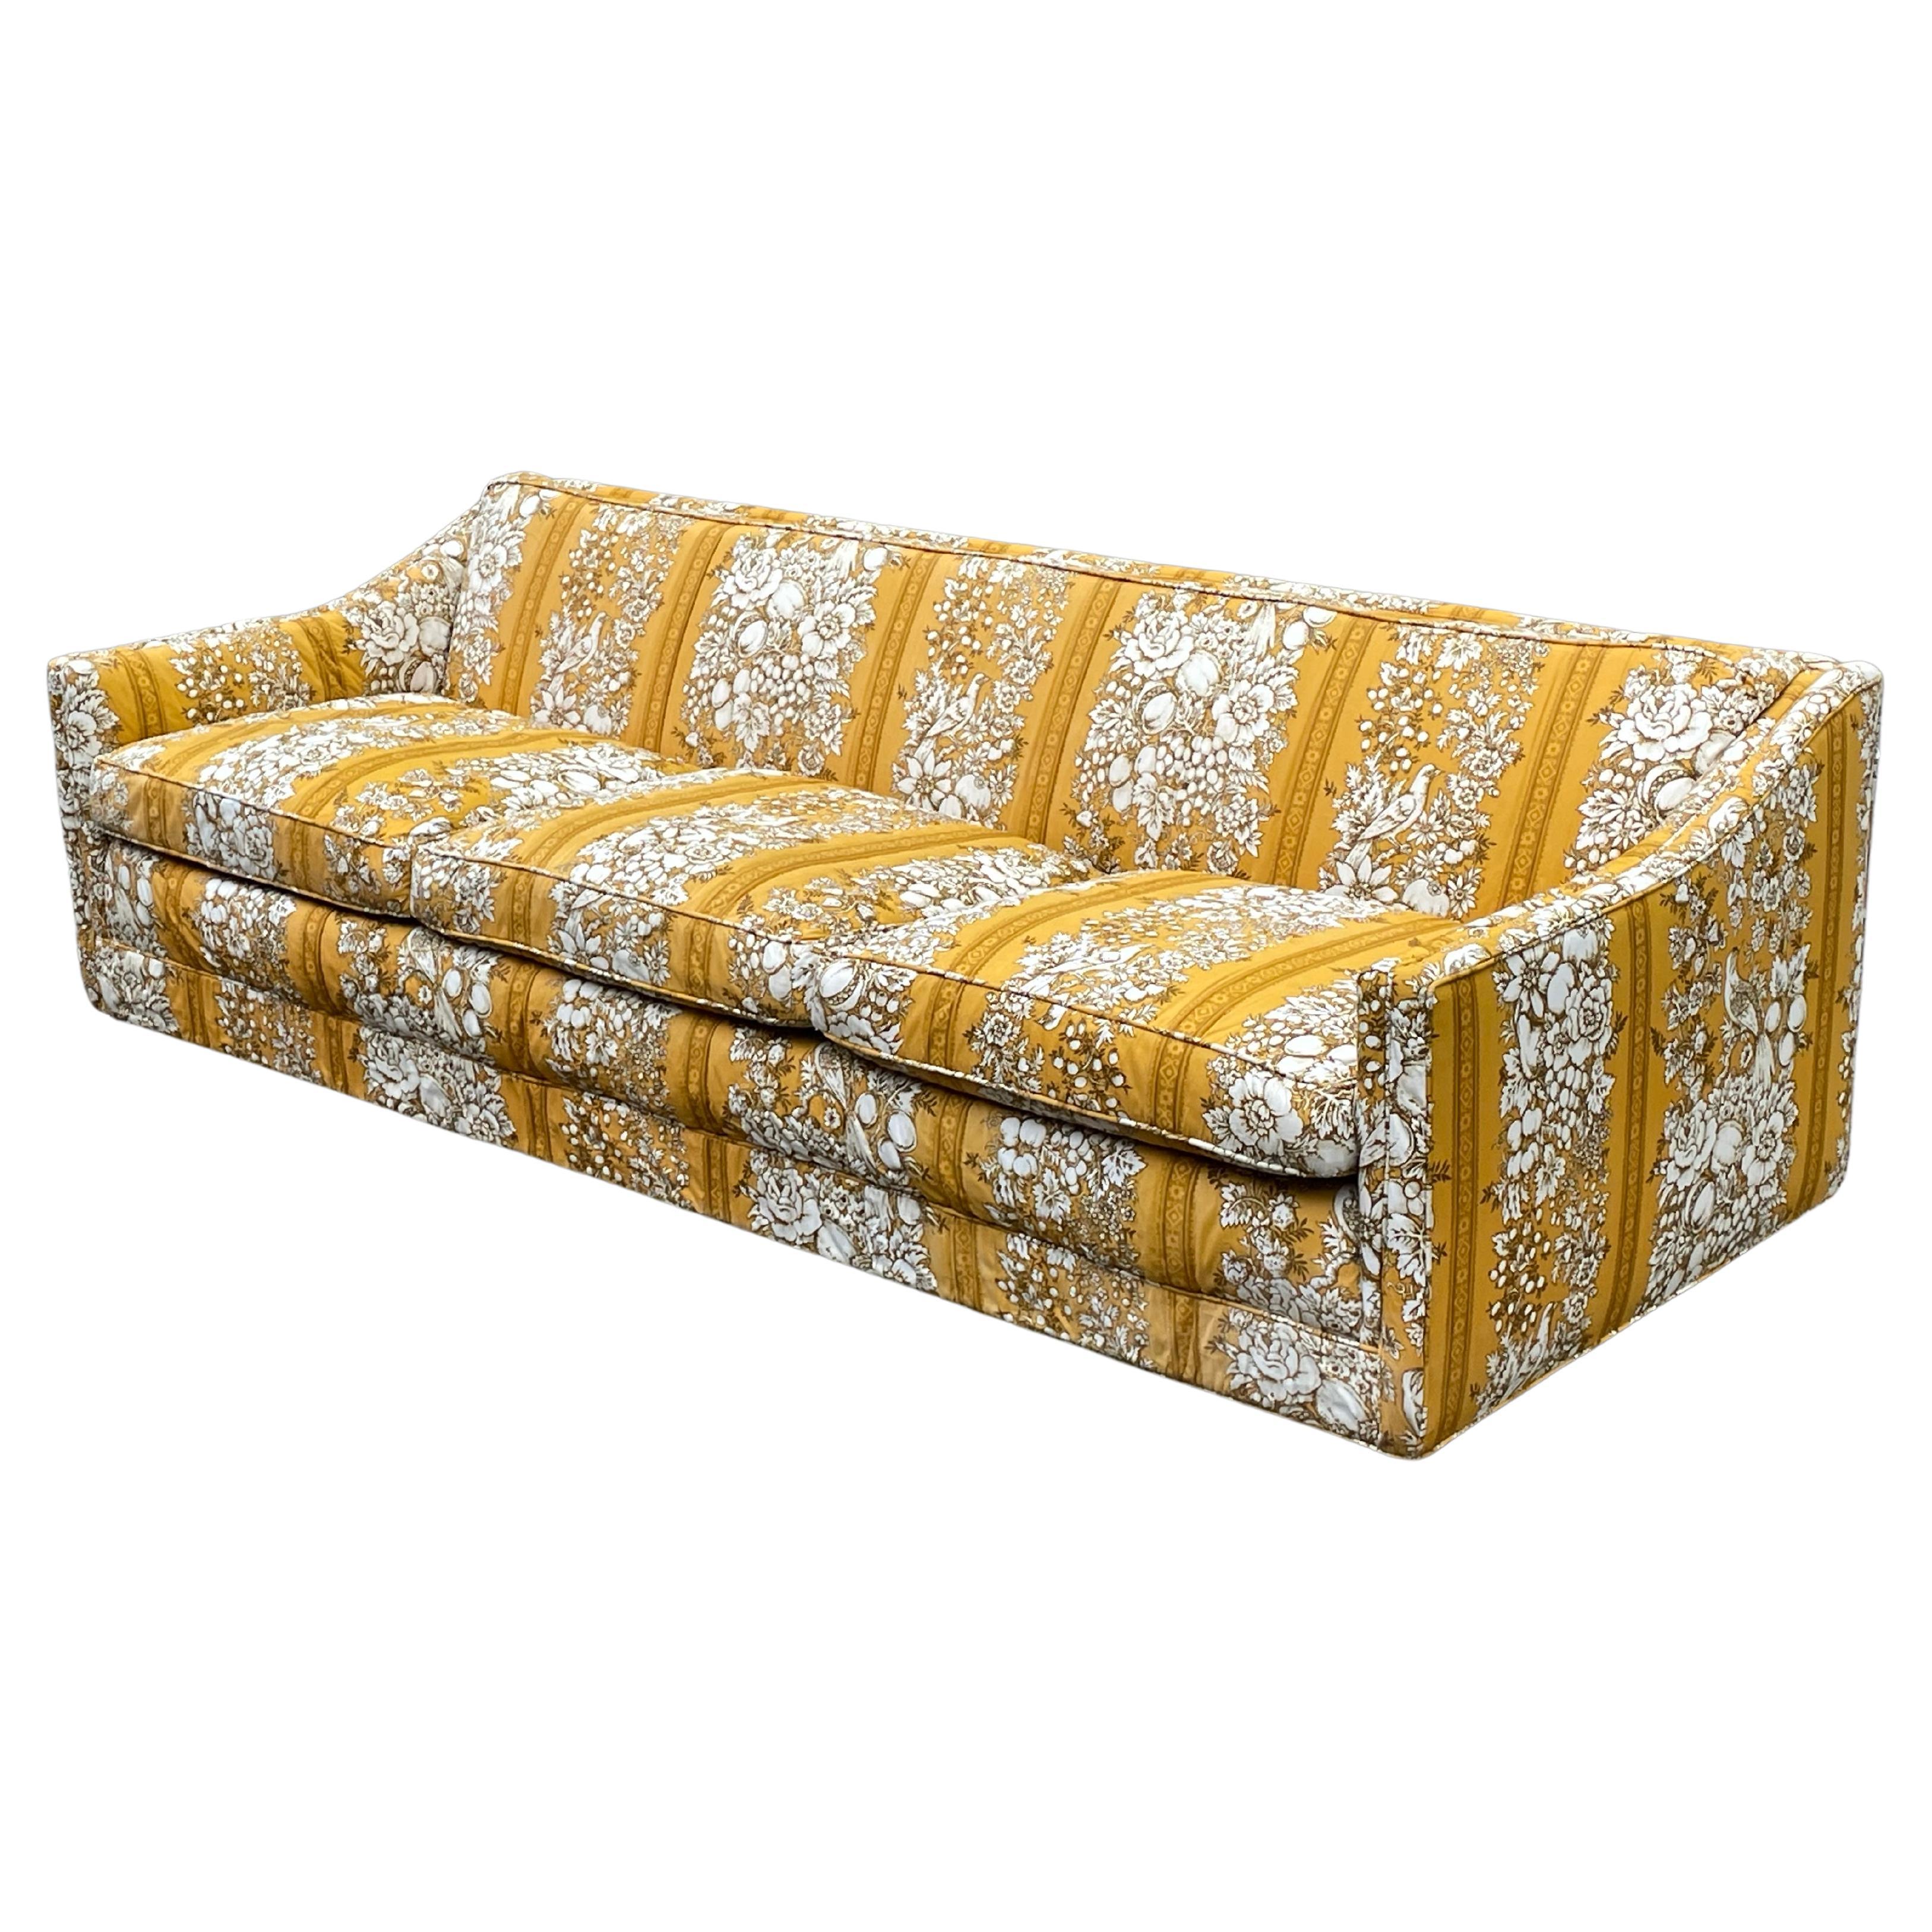 Skulpturales Vintage-Sofa aus den 60er Jahren mit wunderschönem gelben Originalstoff. Es war ein maßgefertigtes Sofa des Luxuskaufhauses Bullocks in Los Angeles.

Es stammt aus einem Nachlass im Stadtteil Brentwood in Los Angeles.

Dieses Sofa ist